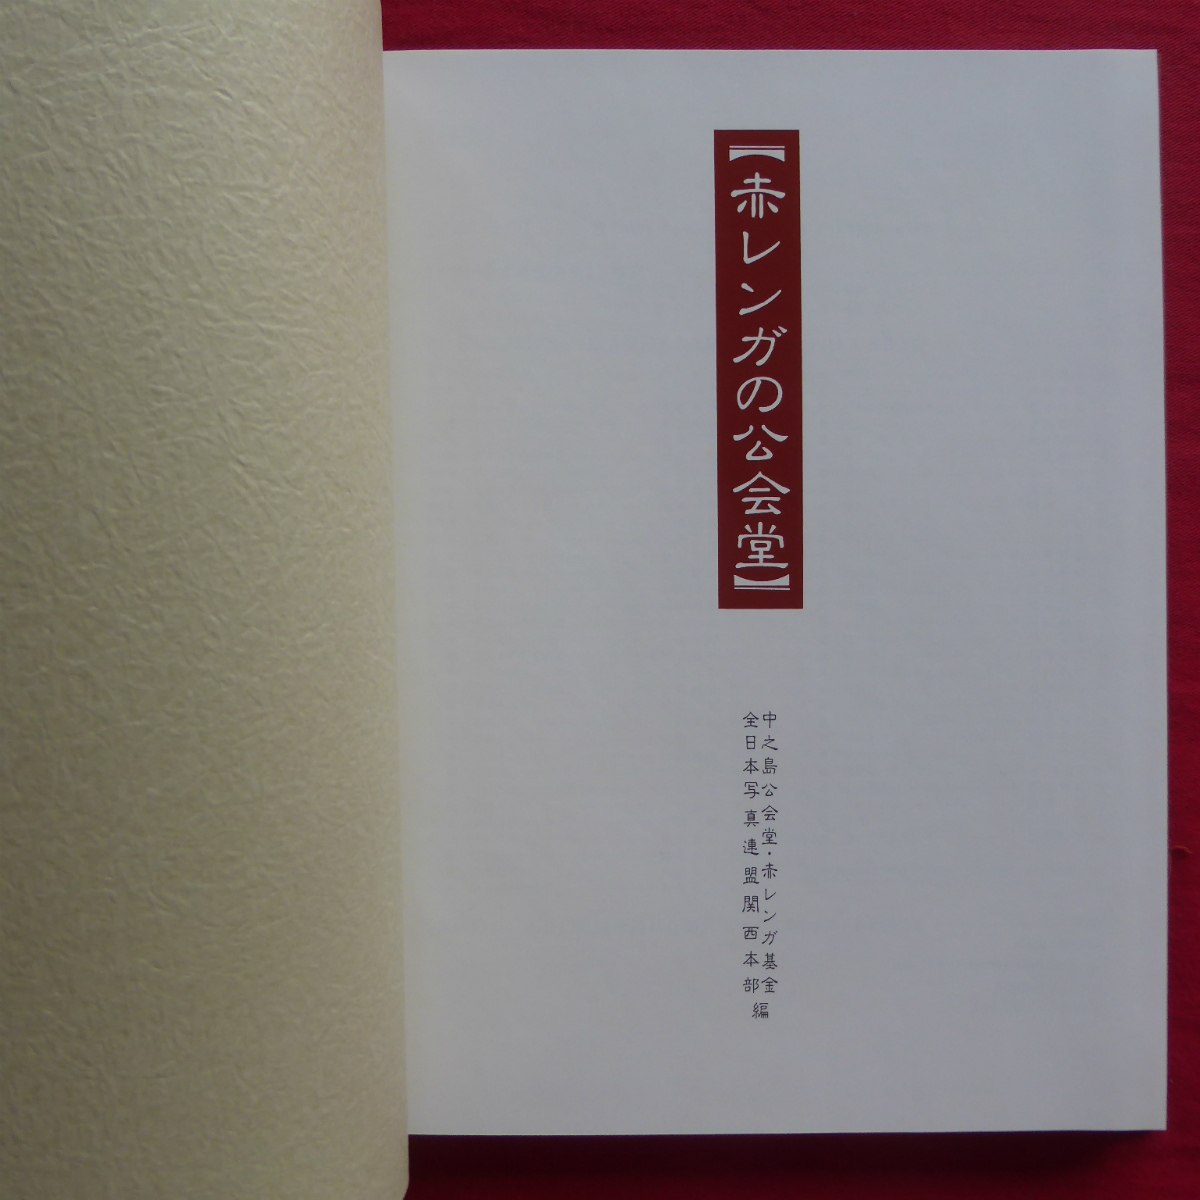 z2[ красный кирпич. .../ средний . остров ...* красный кирпич фонд : все Япония фотография полосный . Kansai книга@ часть сборник ] Osaka. символ . я состояние .... мужчина - скала книга@.... сырой .-@2